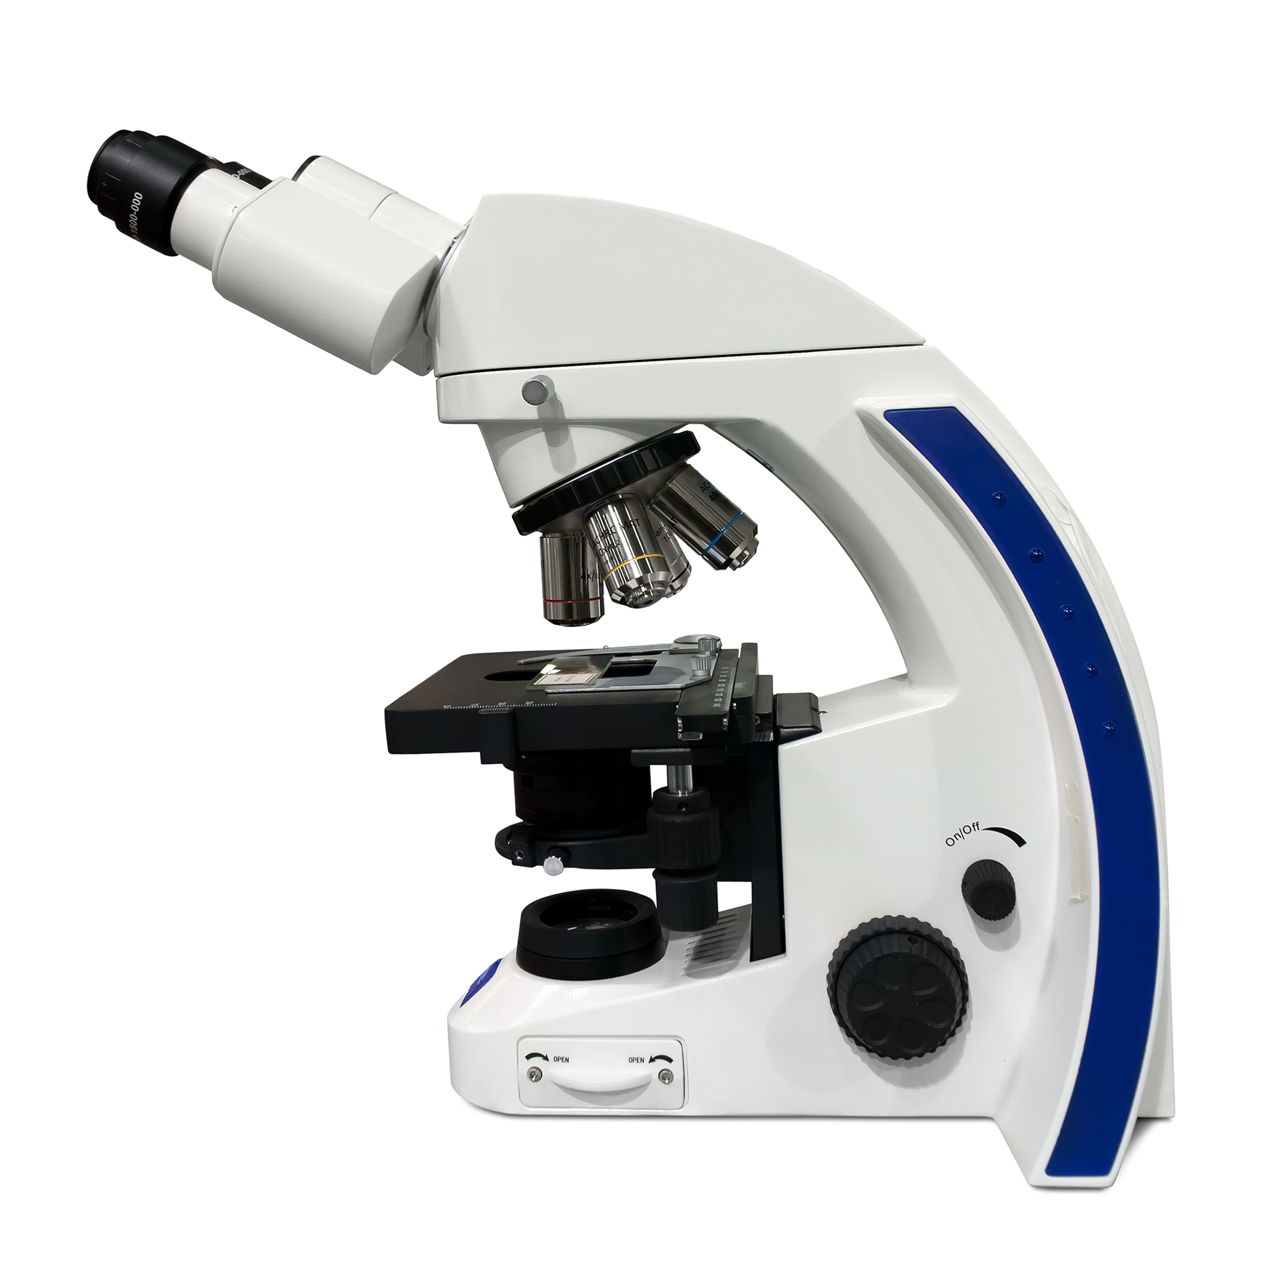 Microscope Types